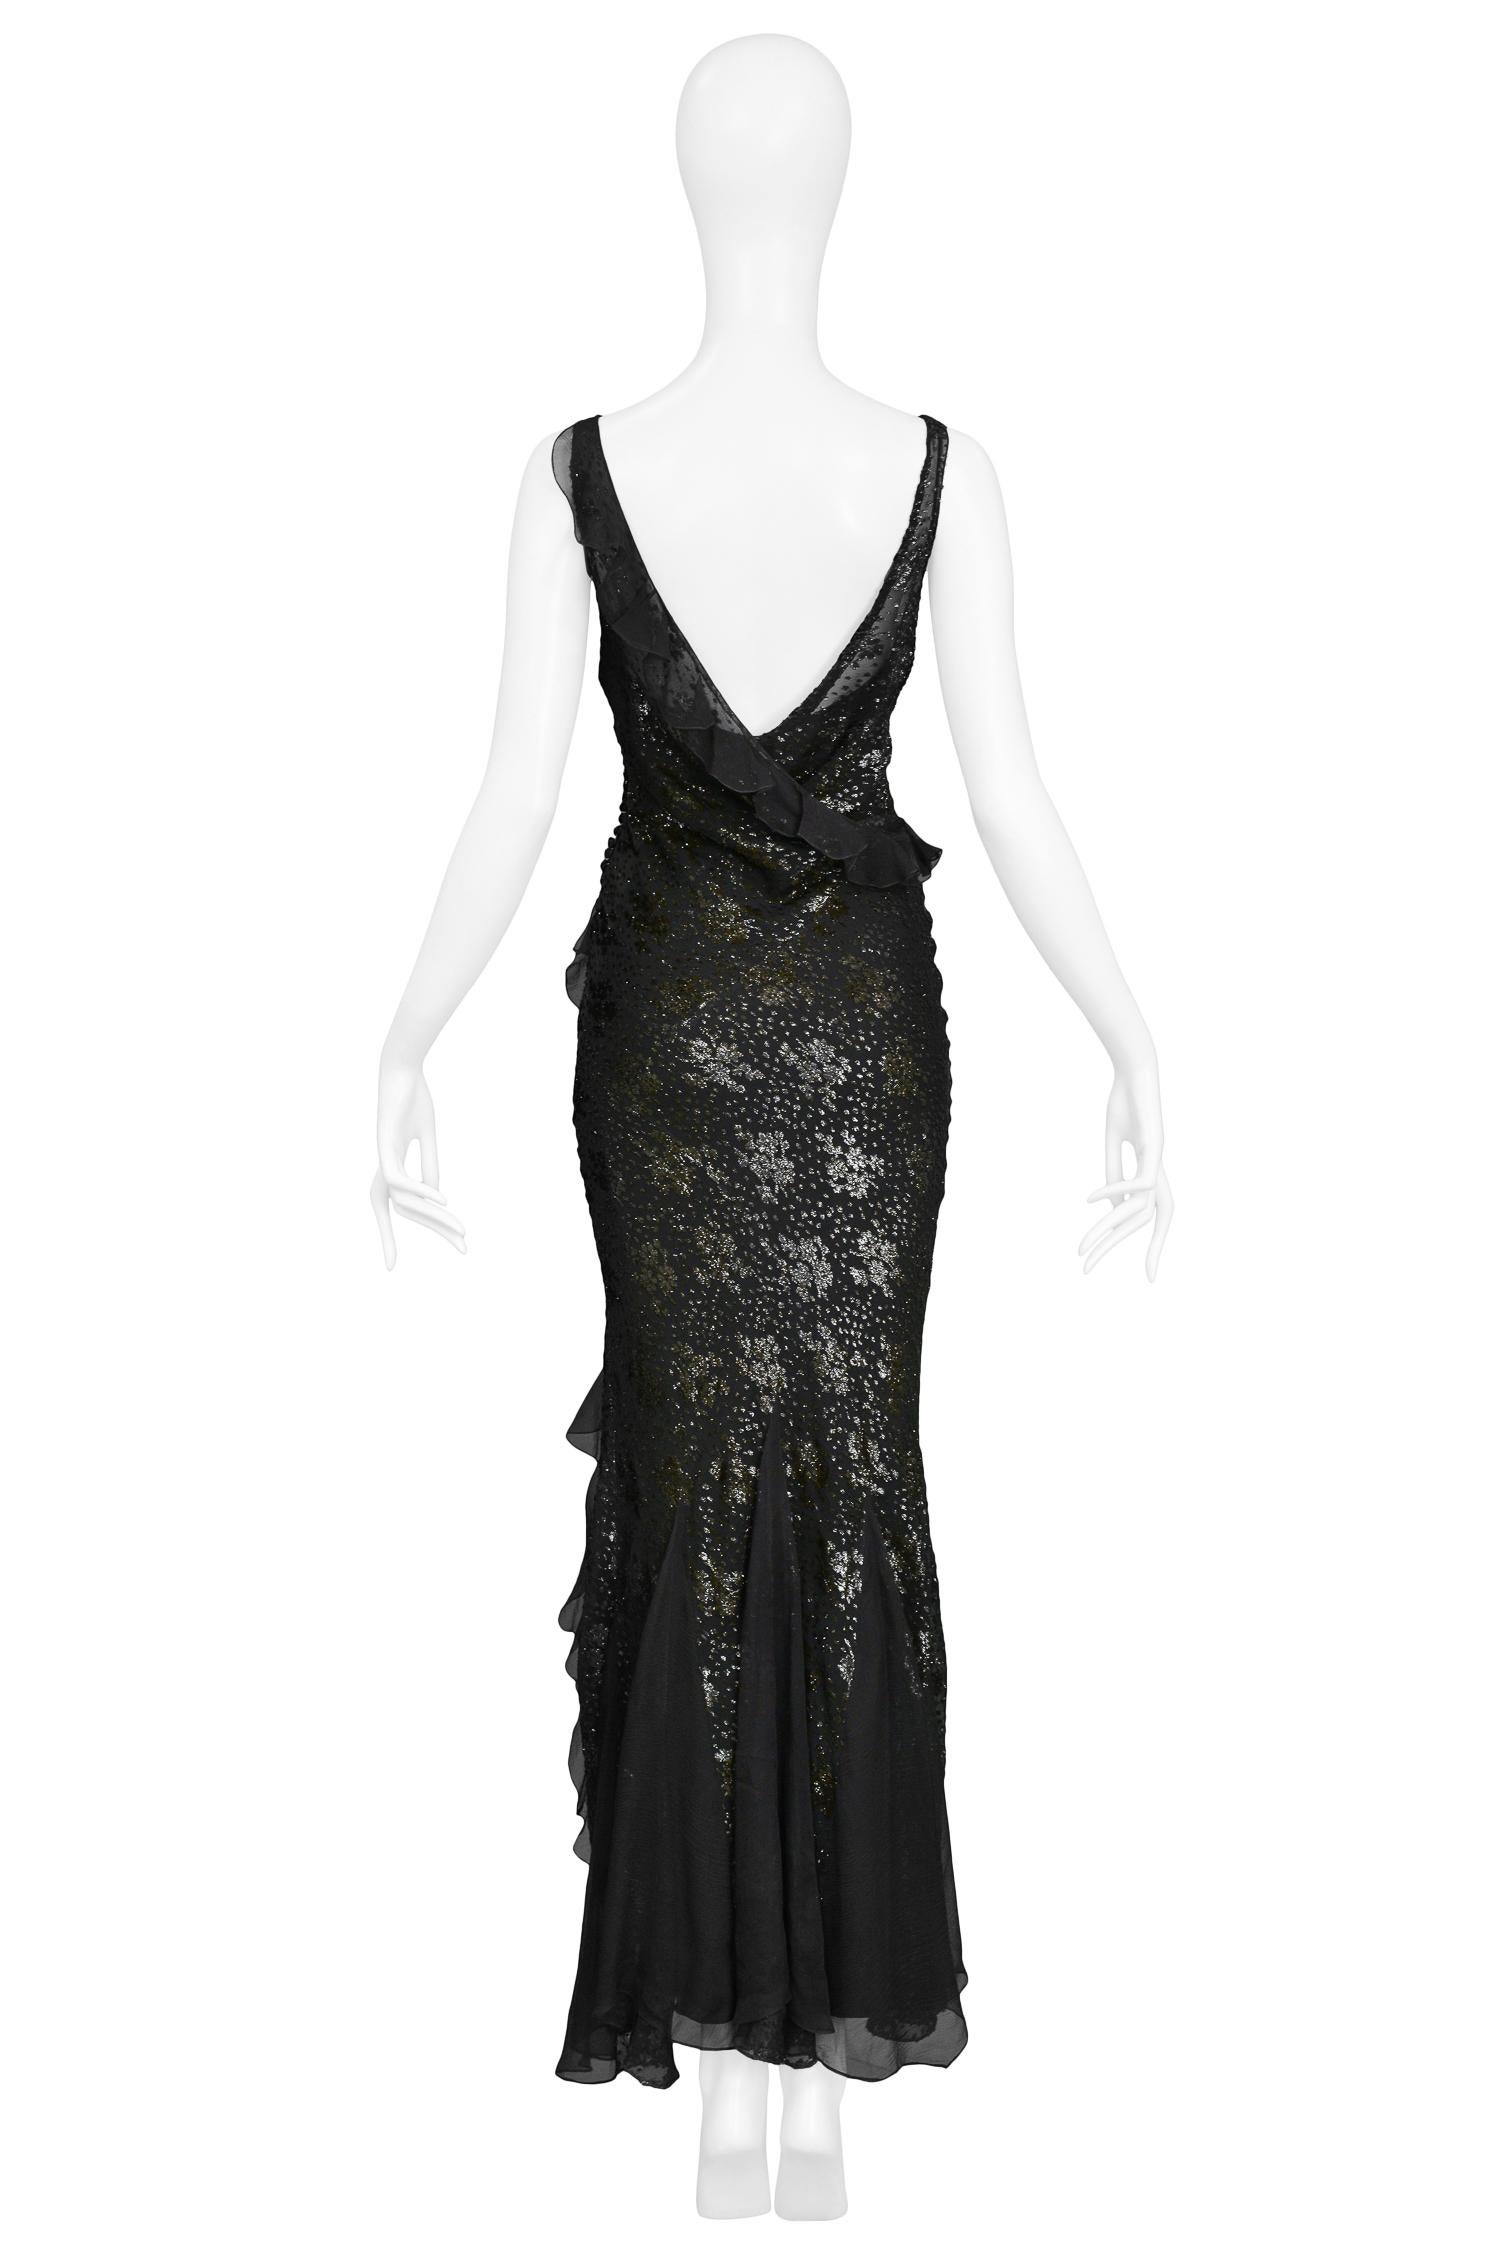 dior vintage black dress